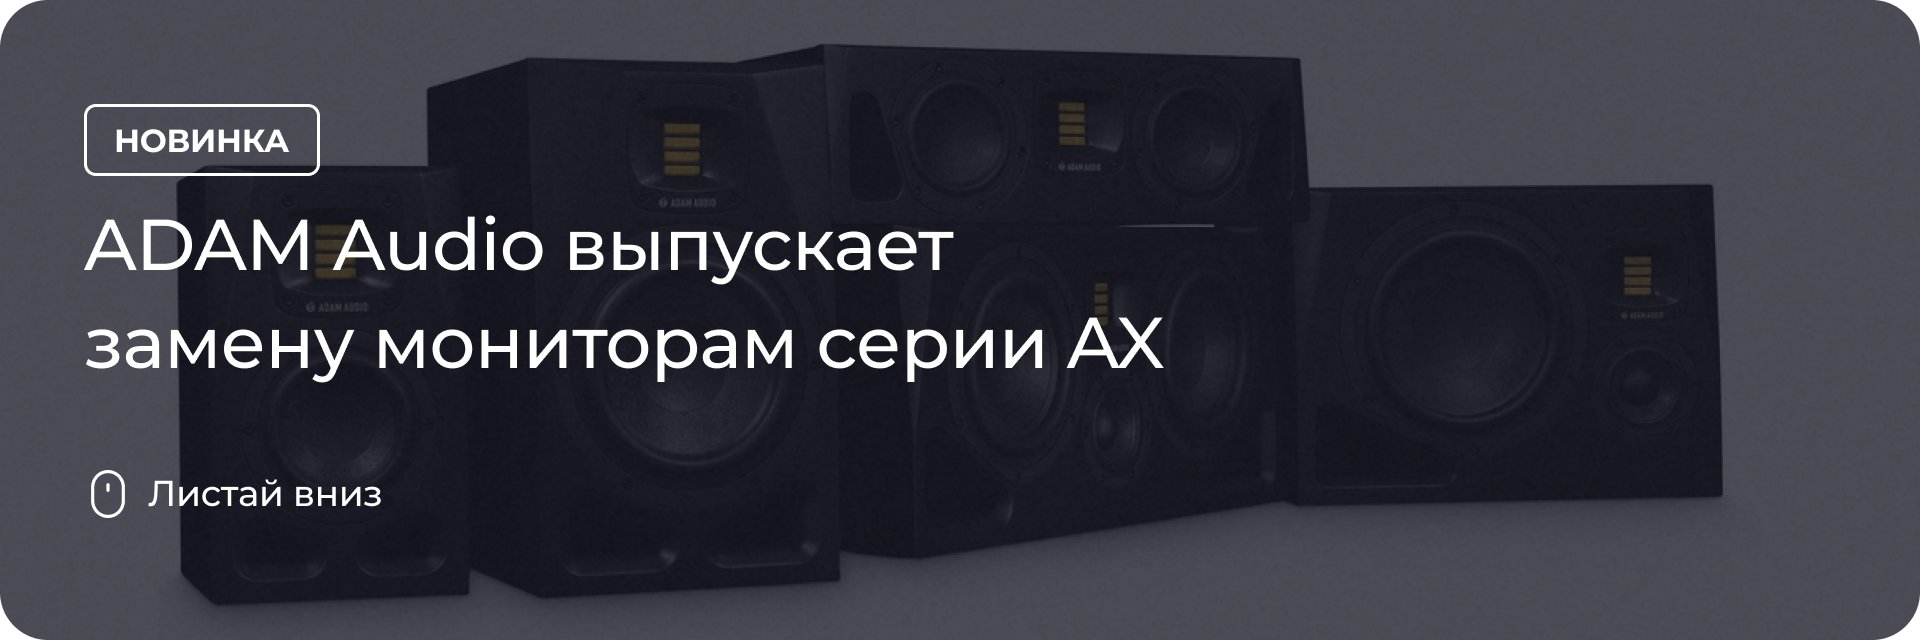 ADAM Audio выпускает замену мониторам серии AX